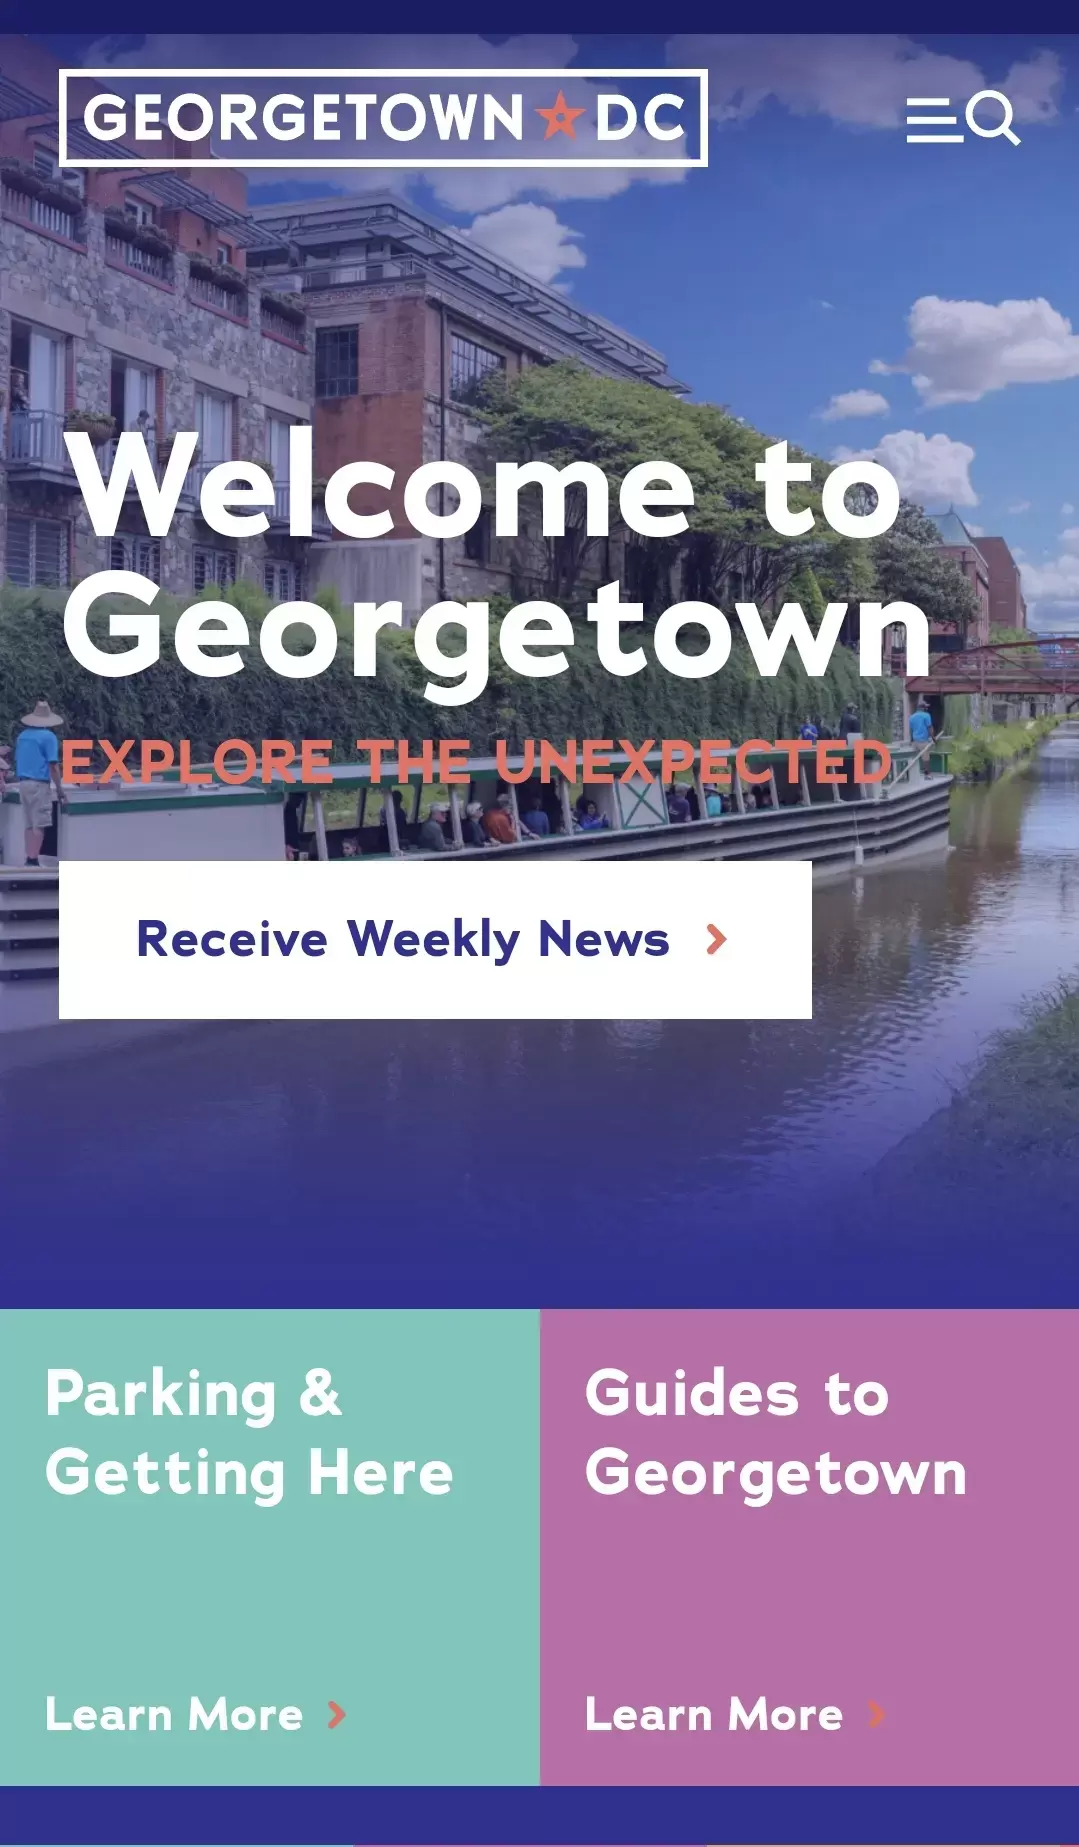 La ville de Georgetown DC a décidé d'utiliser un site web adapté aux smartphones